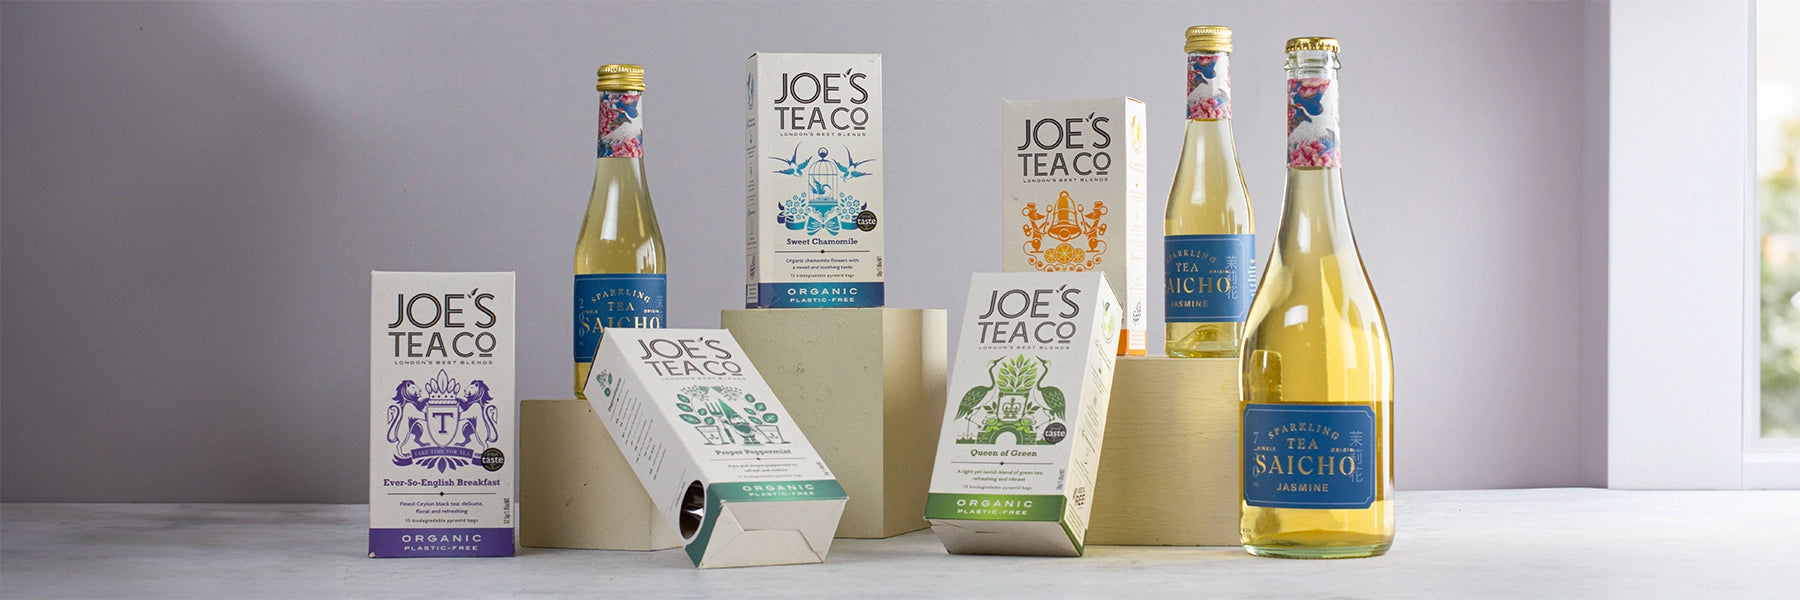 Joes Tea and Saicho Tea Selection